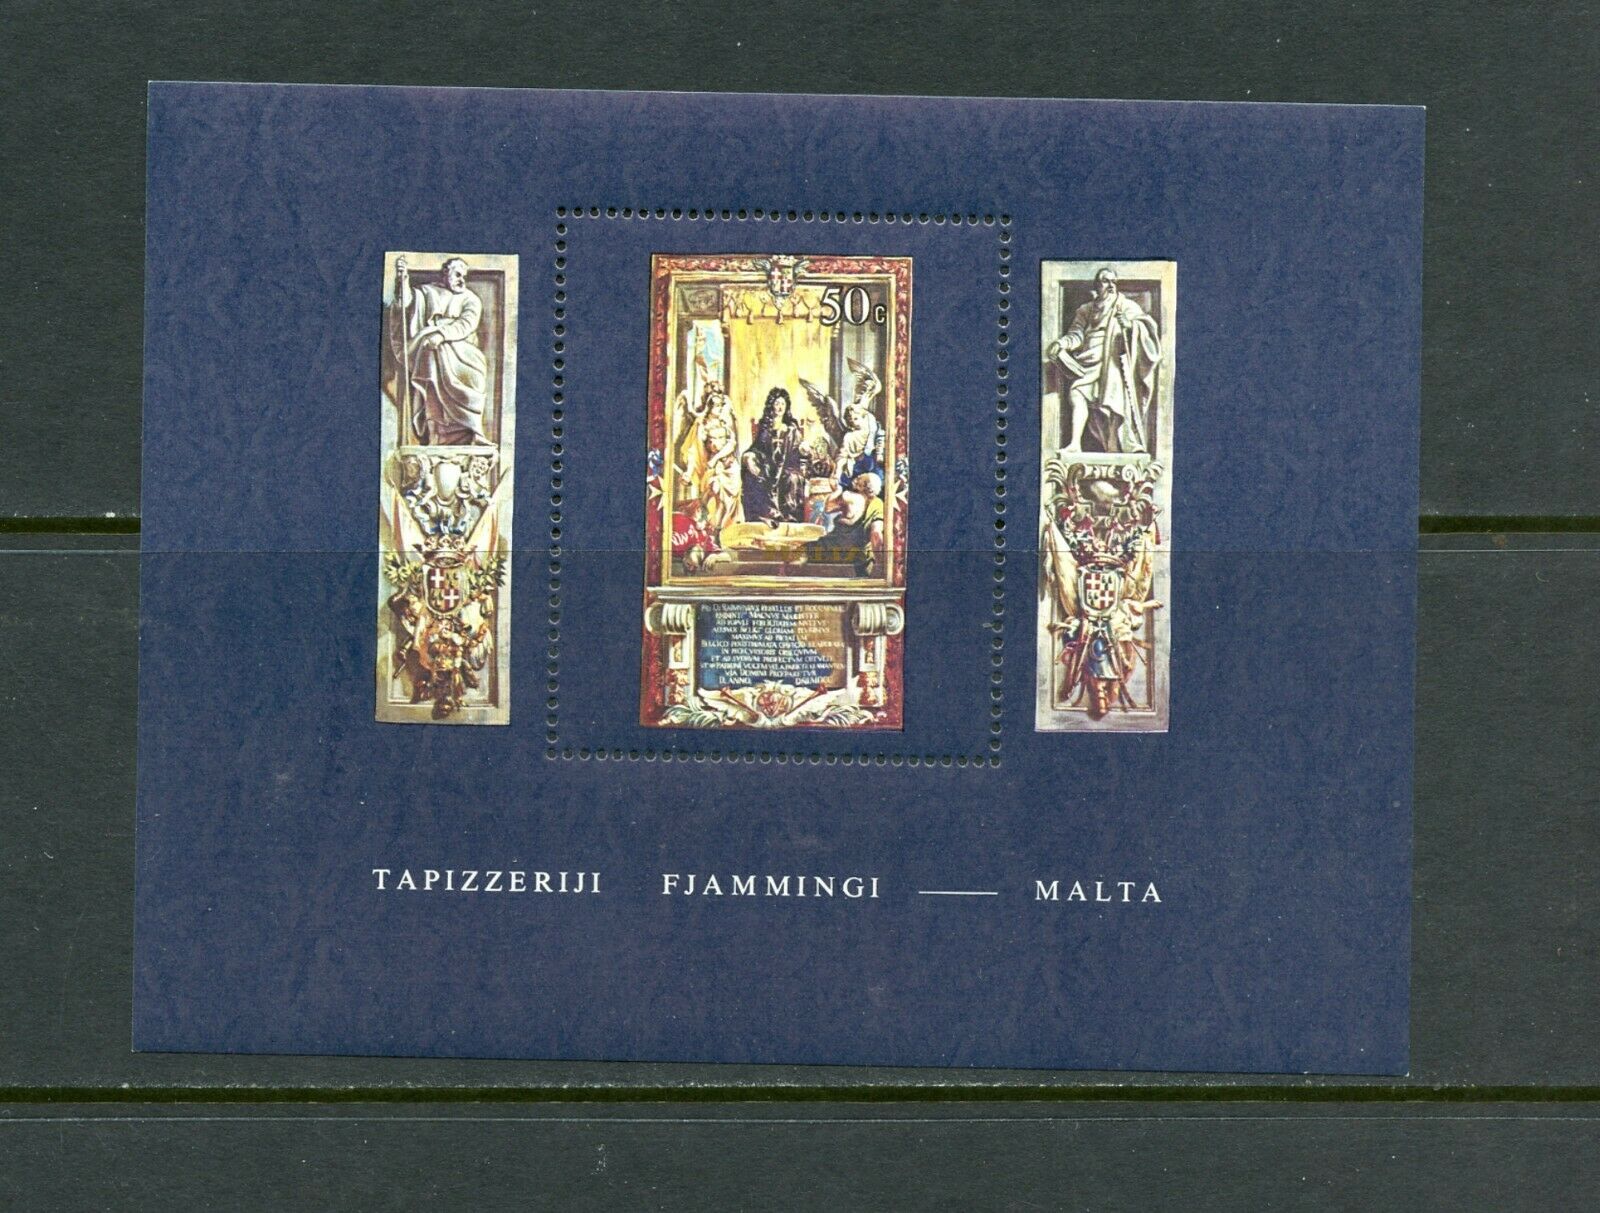 E278  Malta  1980   Art Tapestries   Sheet       Mnh